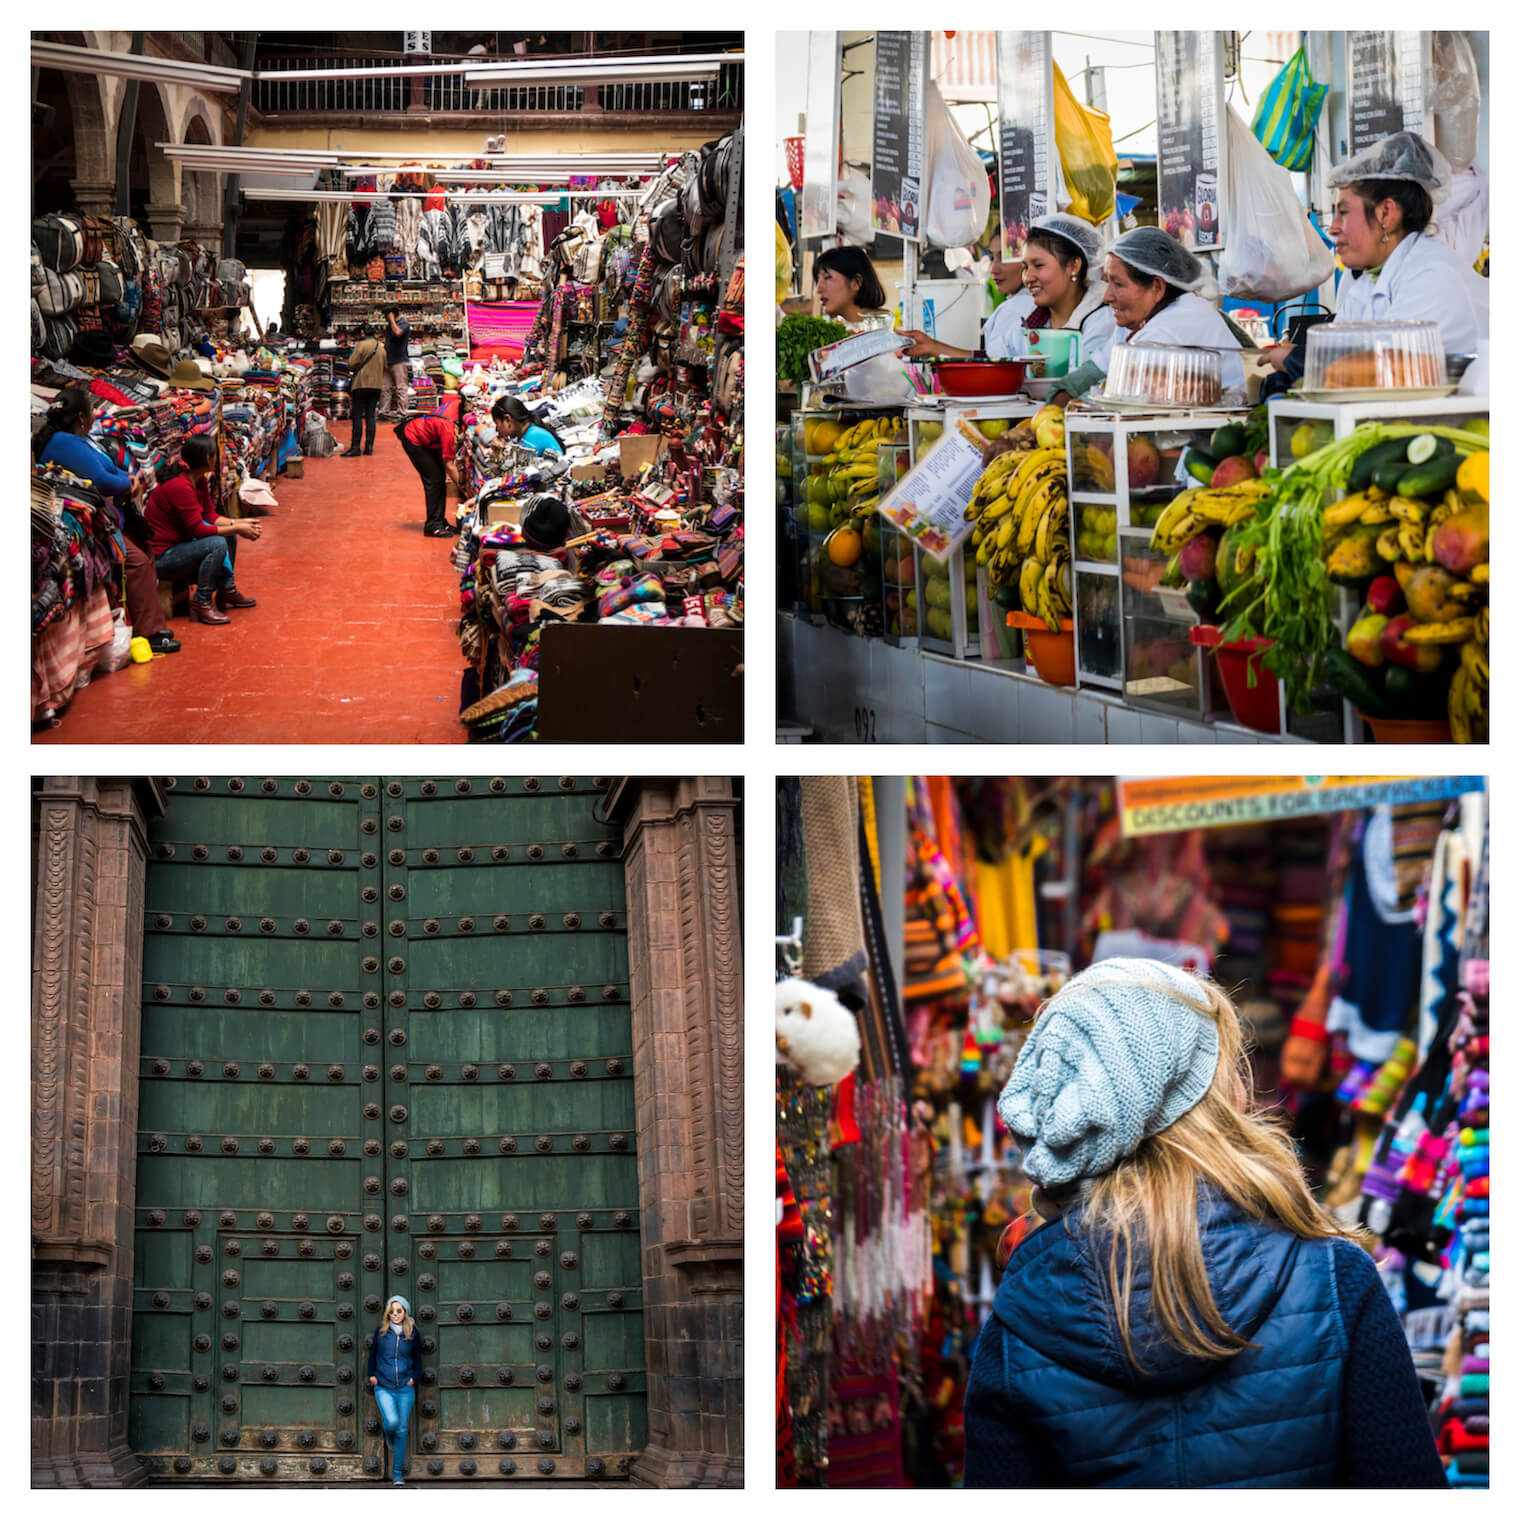 4 Fotos de Cusco - Uma feira de artesanato, mulheres de branco vendendo frutas, um portão verde bem grande com uma garota na frente, uma garota de costas perto de várias coisas coloridas